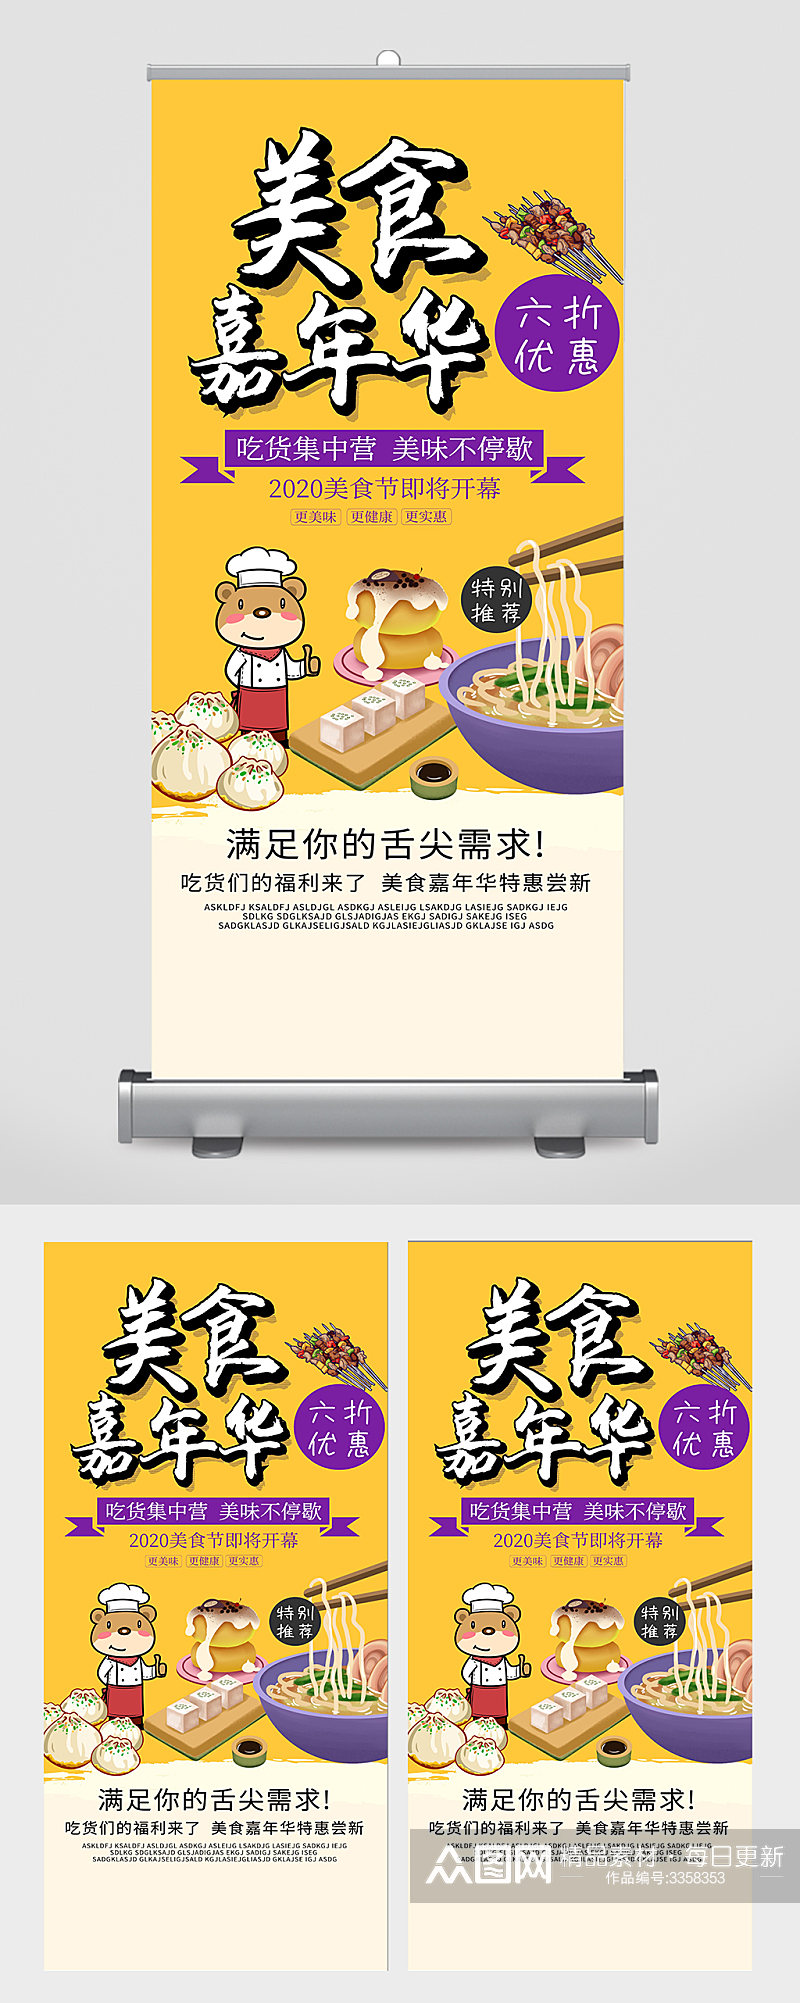 美食面食包子火锅优惠宣传海报素材